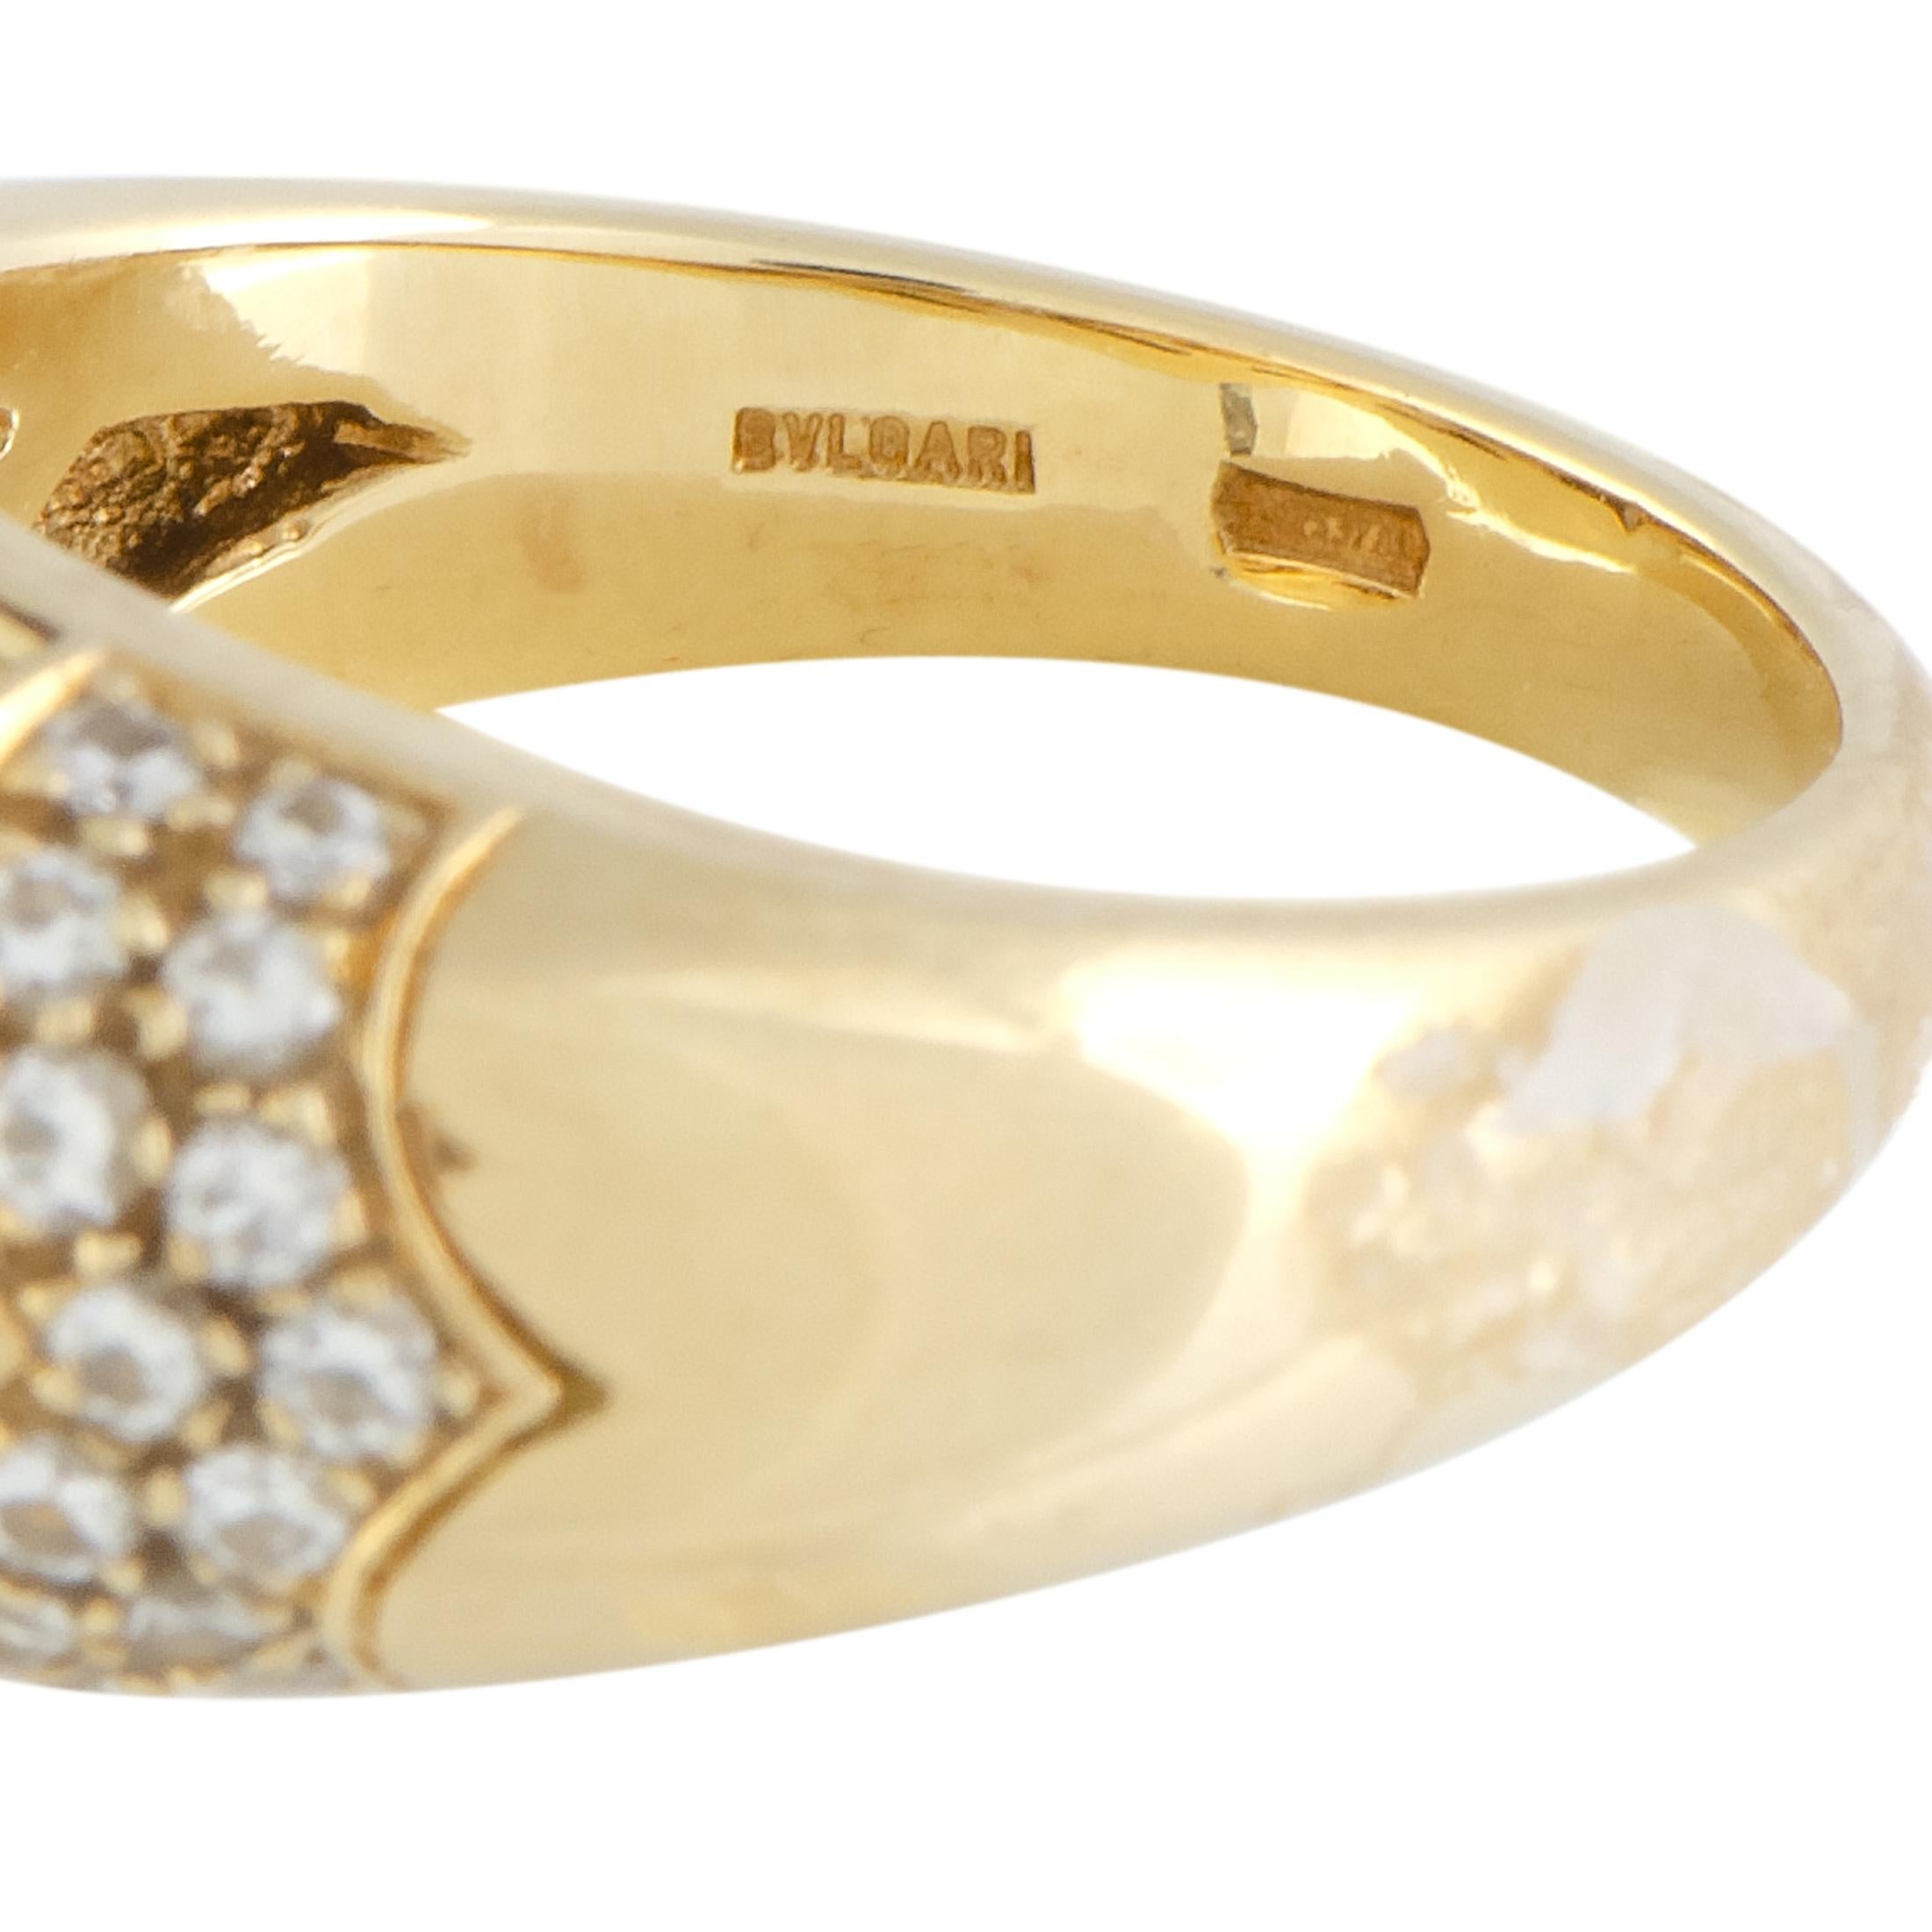 Women's Bvlgari Tronchetto 18 Karat Yellow Gold Diamond and Citrine Ring